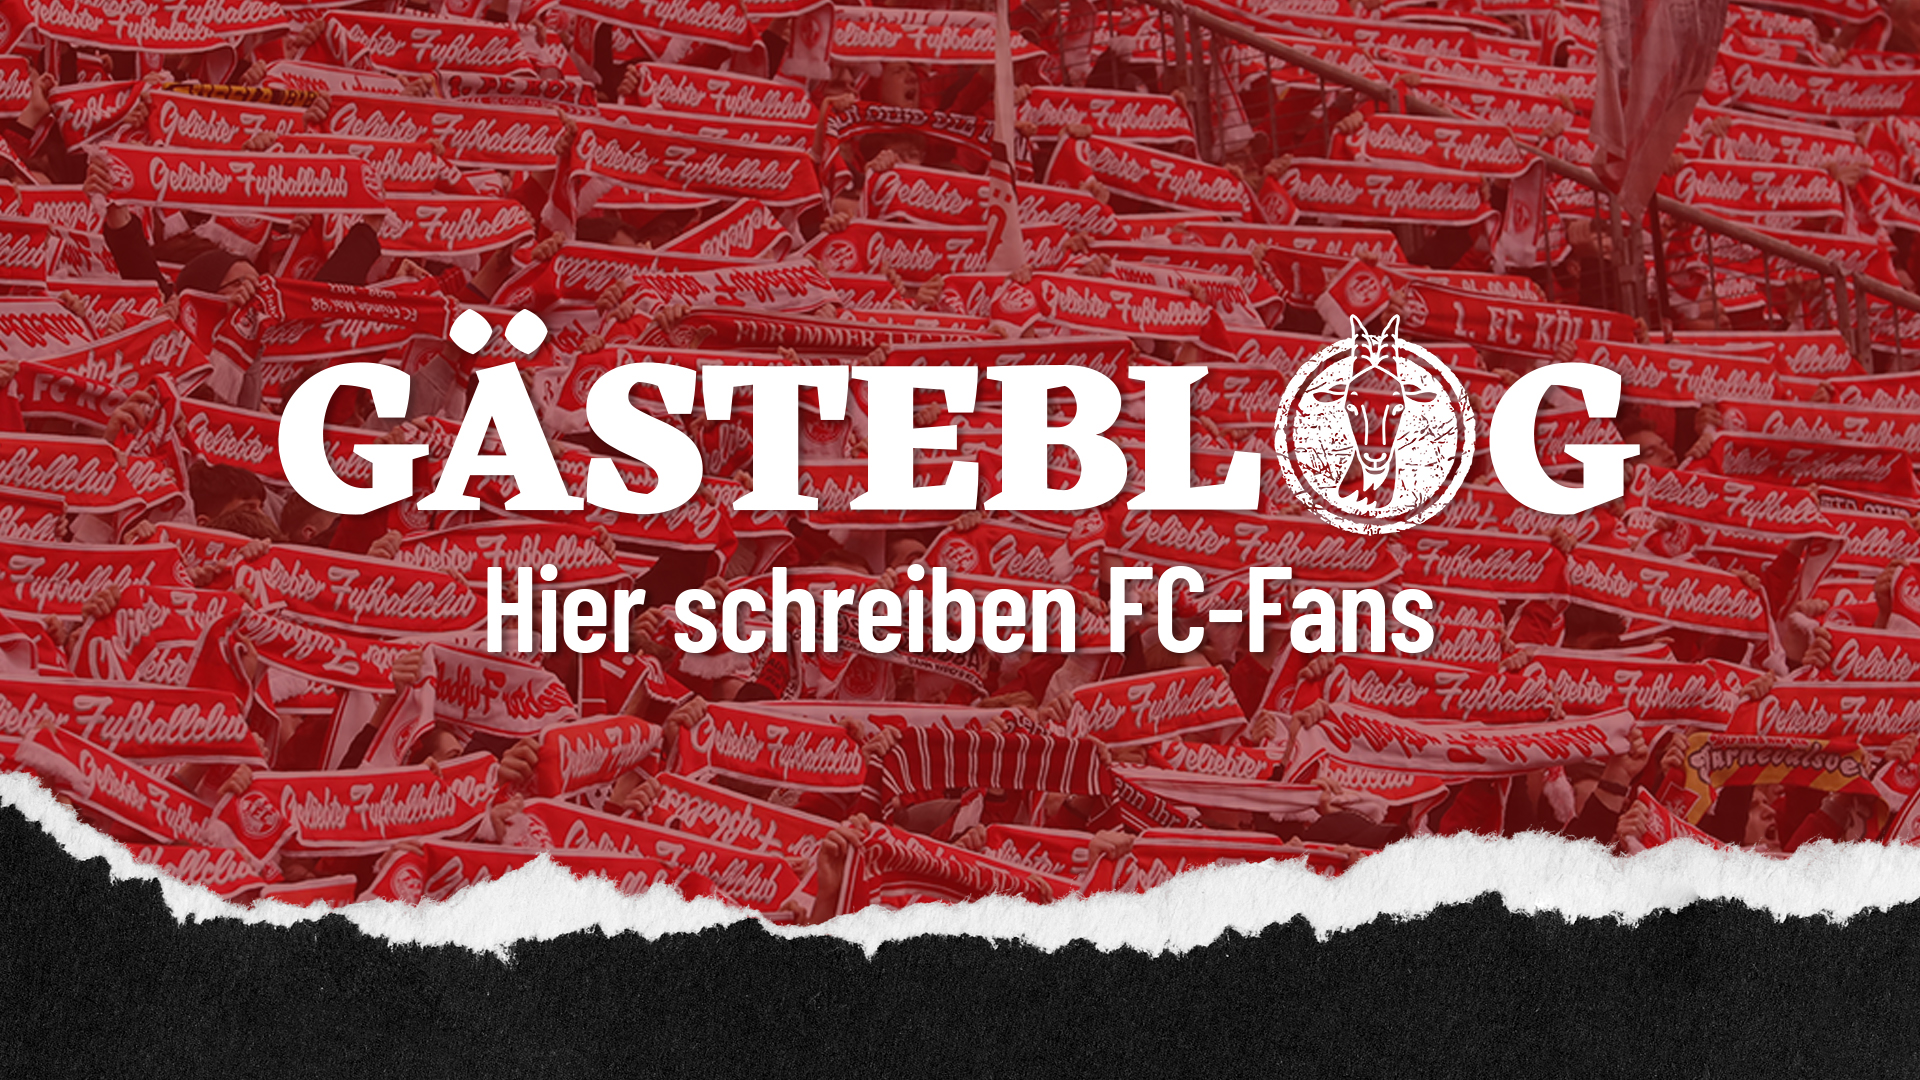 Im "GÄSTEBLOG" haben die FC-Fans die Möglichkeit, ihre Meinung zur aktuellen Situation beim 1. FC Köln kundzutun. (Foto: Bucco)